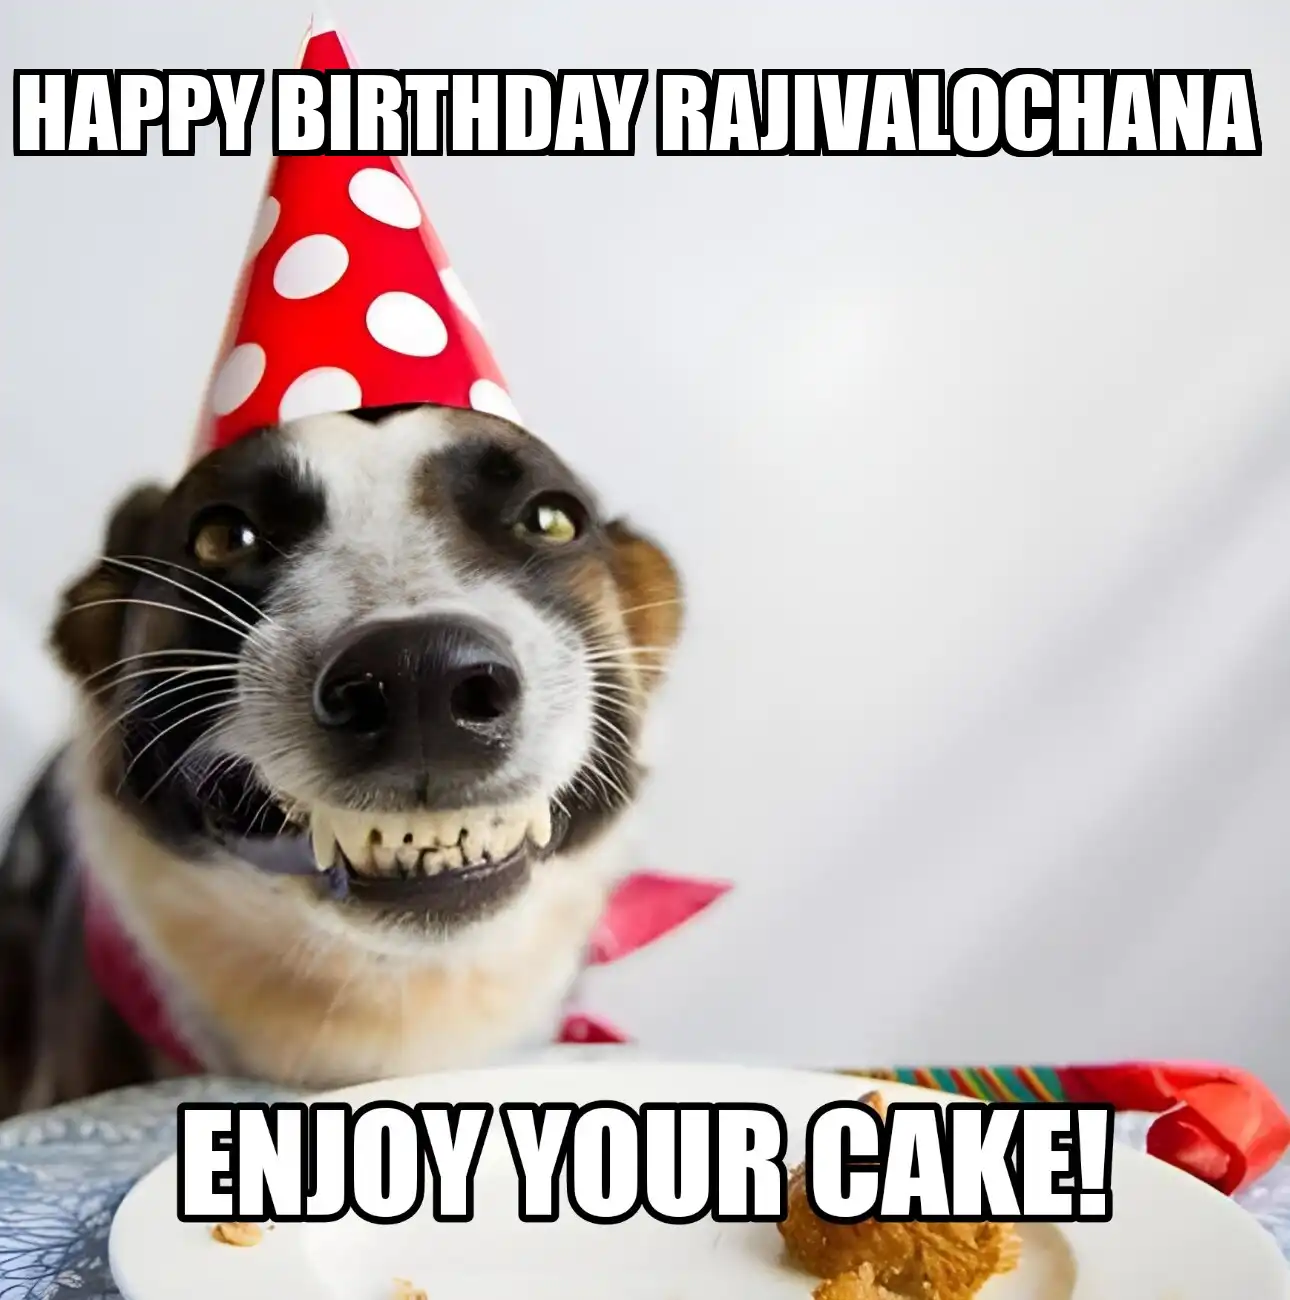 Happy Birthday Rajivalochana Enjoy Your Cake Dog Meme